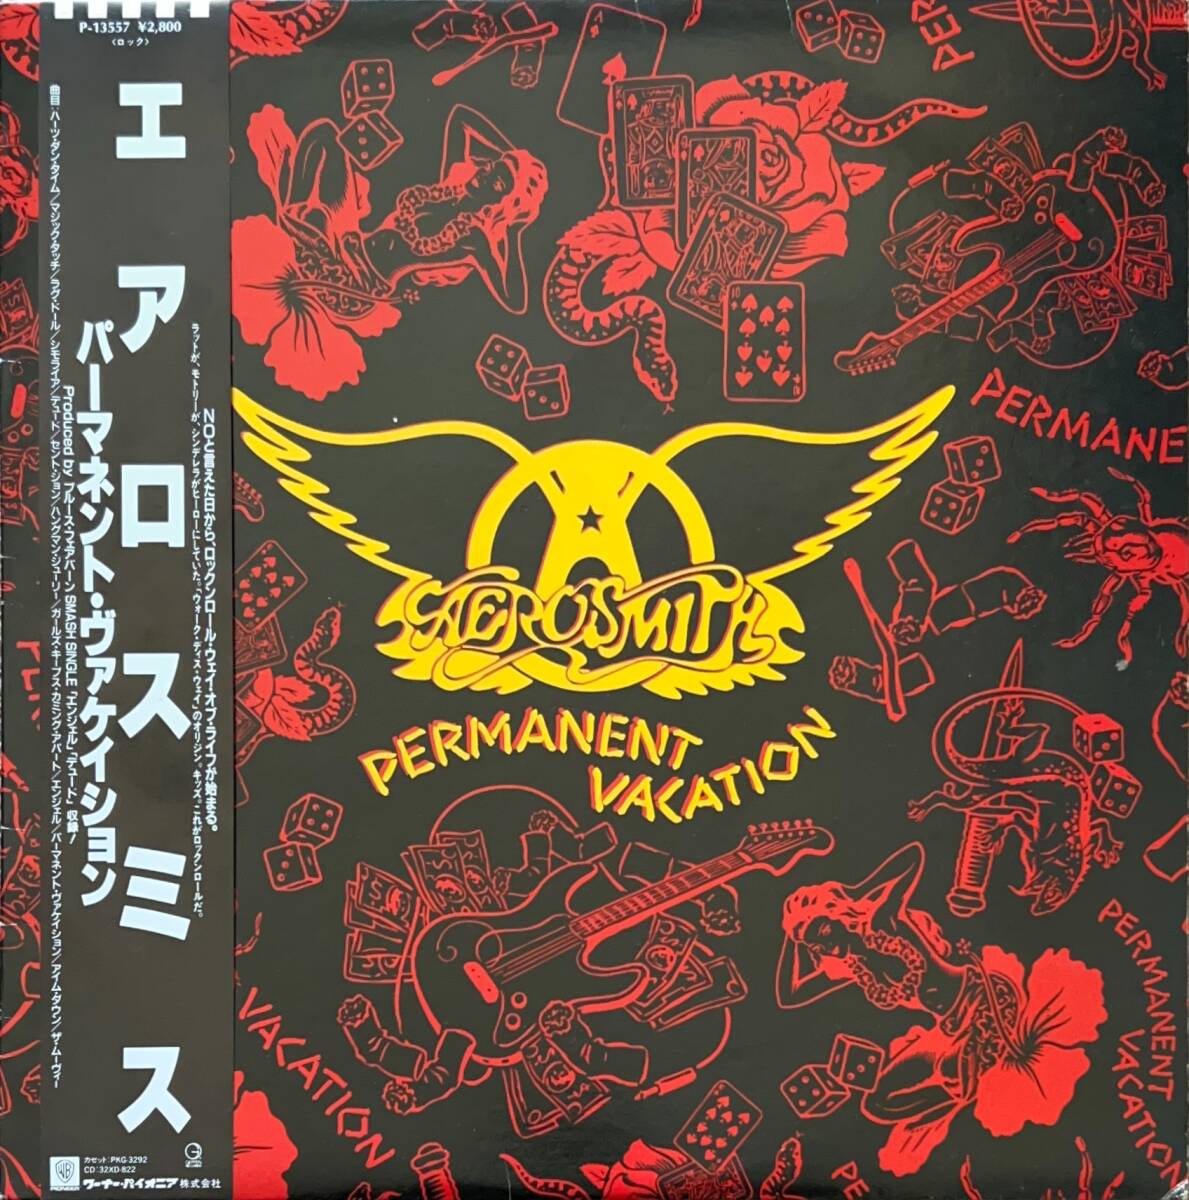 エアロスミスAEROSMITH パーマネント・ヴァケイション PERMANENT VACATION LPレコード 日本盤 帯付き P-13557 送料込の画像1